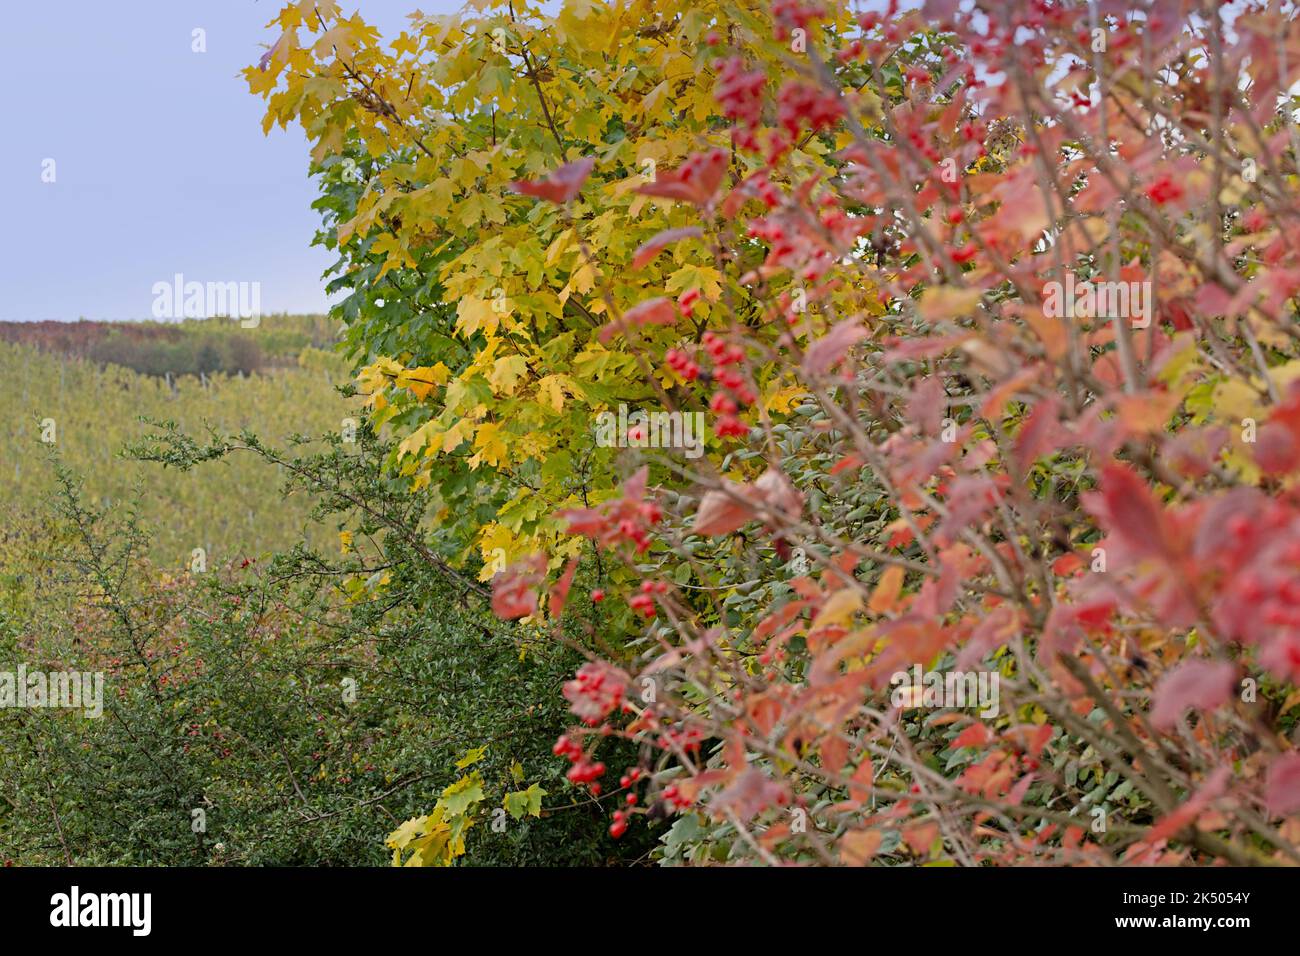 Sträucher und Bäume im Herbst - November Stock Photo